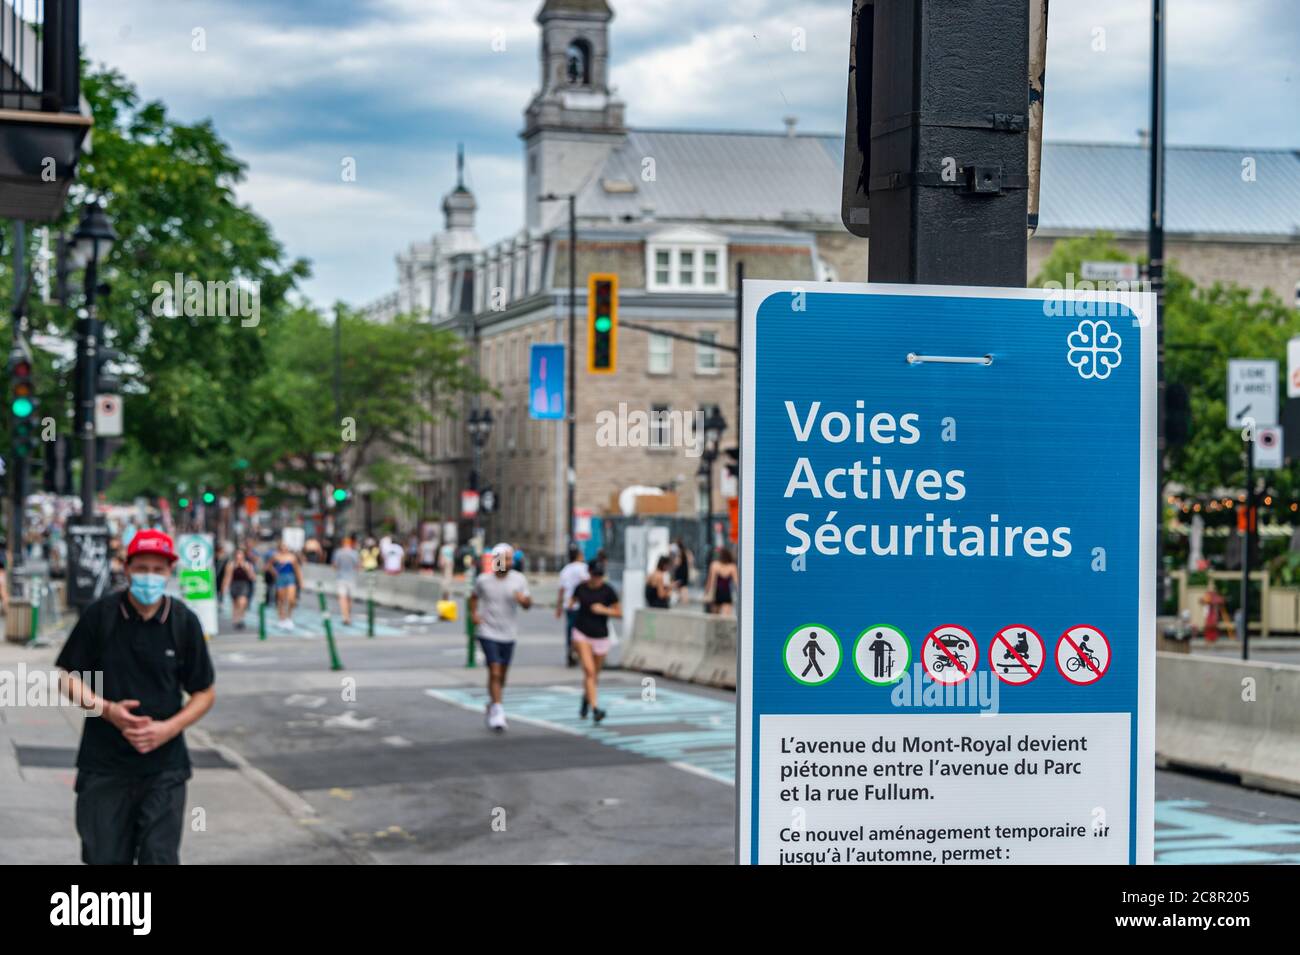 Montréal, CA - 26 juillet 2020 : voies active des sécurités (circuit de transport actif sécurisé) sur l'avenue du Mont-Royal pendant la pandémie Covid-19 Banque D'Images